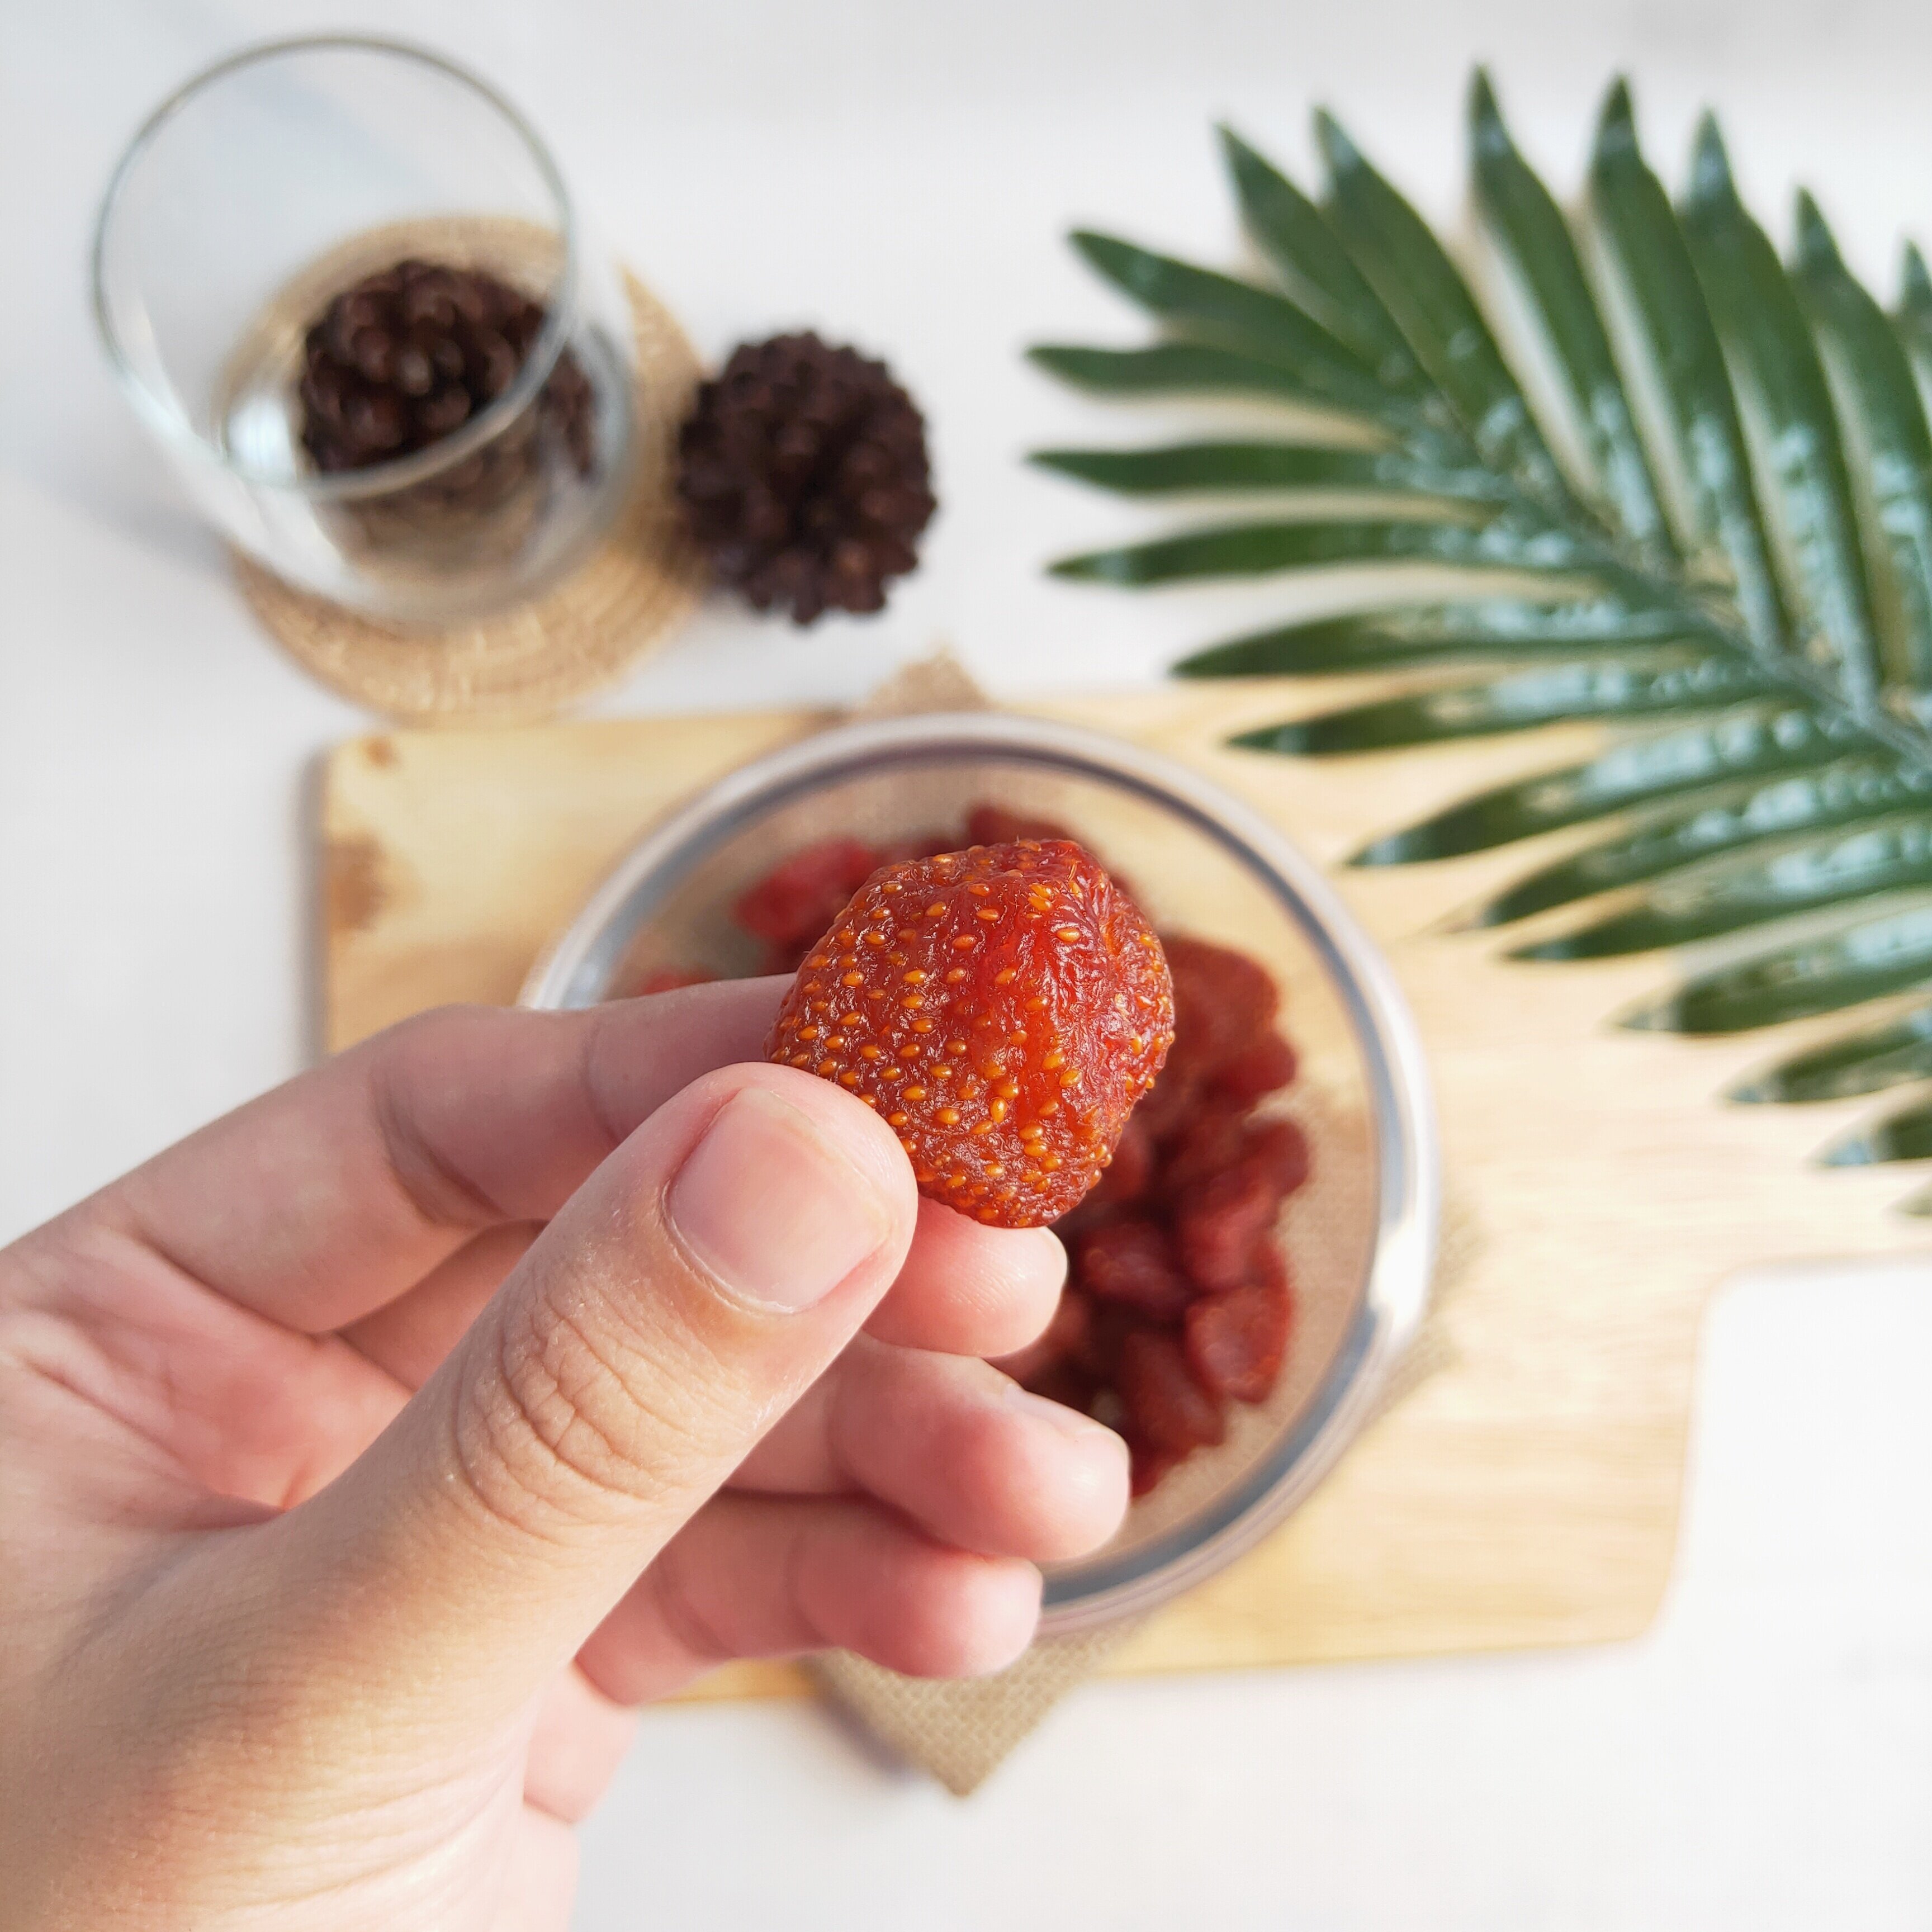 รูปภาพเพิ่มเติมของ สตอเบอรี่อบแห้ง ไม่มีน้ำตาล เกรดพรีเมี่ยม อบธรรมชาติ ผลไม้อบแห้ง พร้อมทาน ของกินเล่น ขนม (Dehydrated Strawberry)